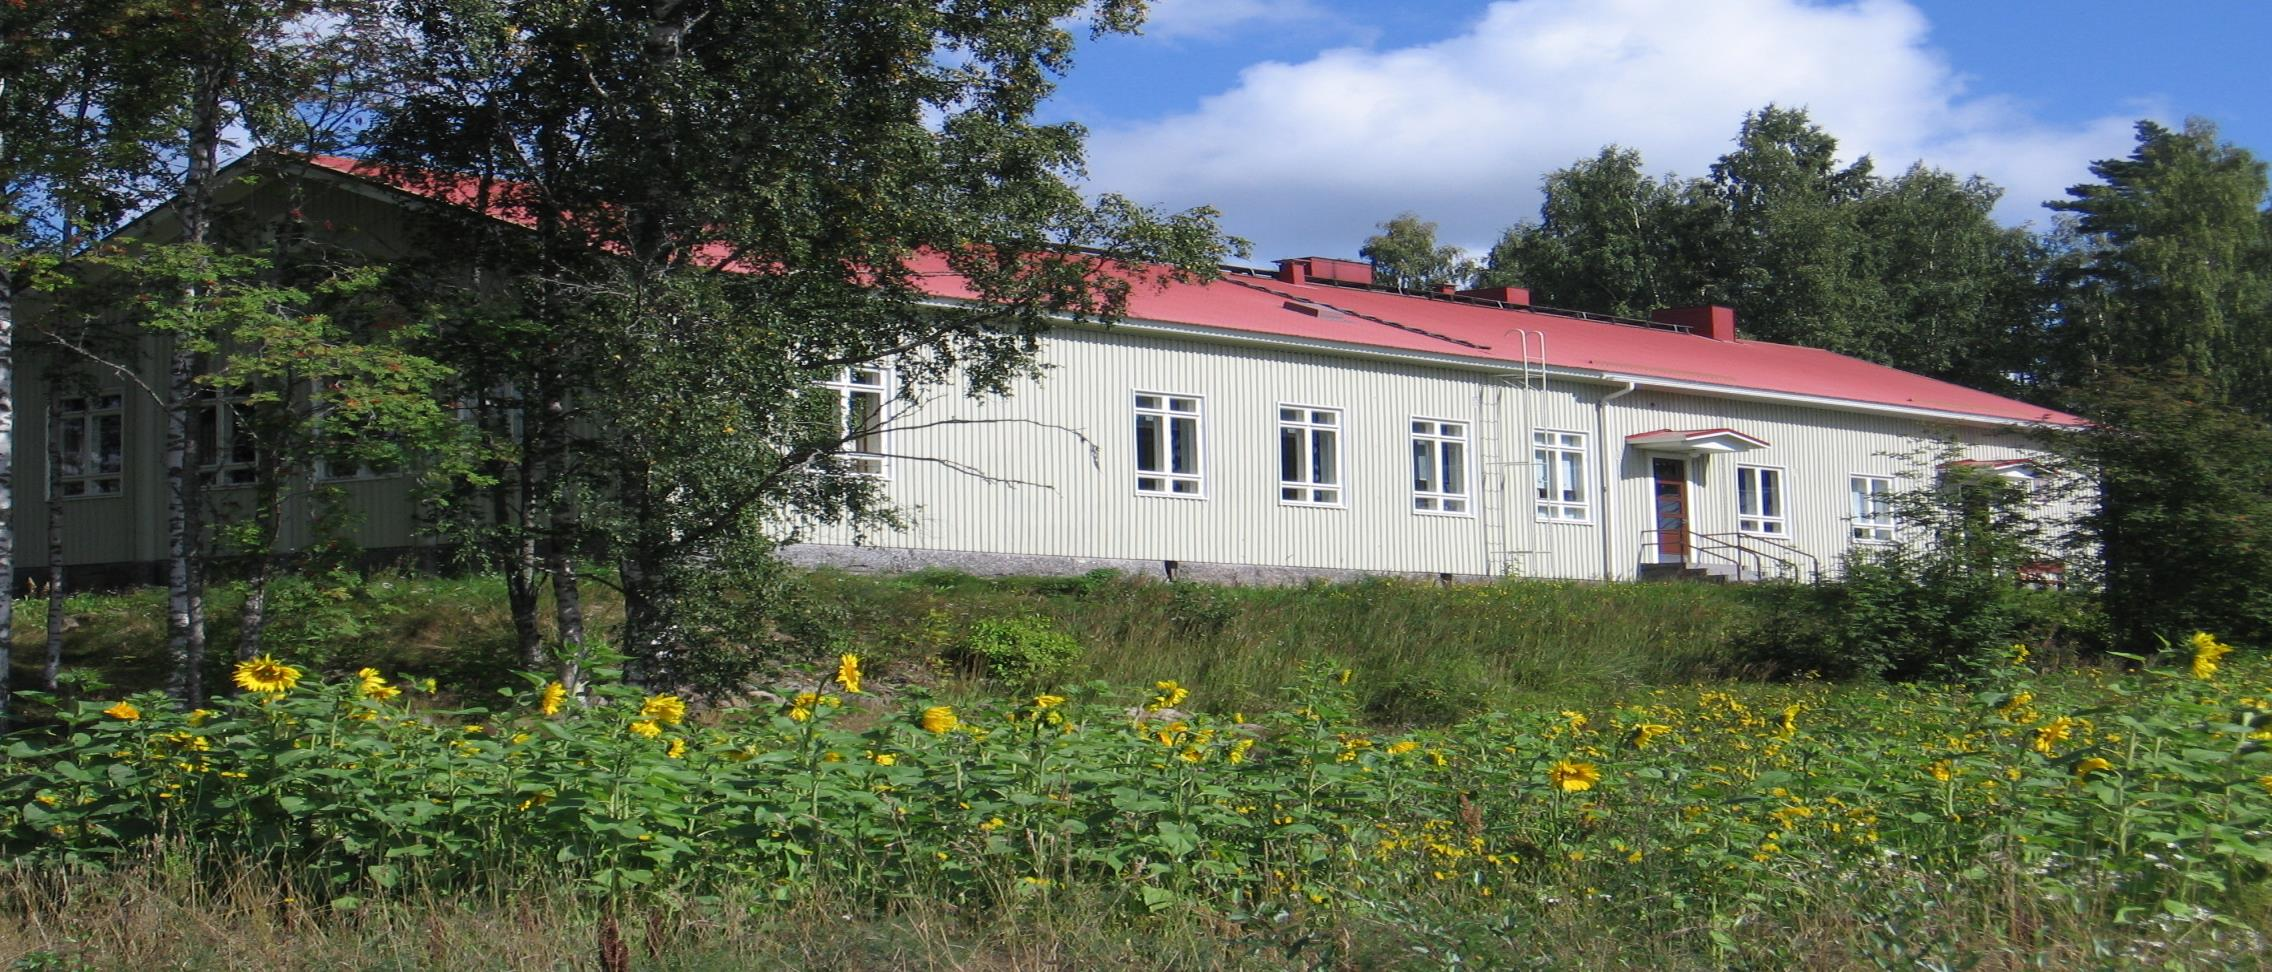 2005 Lantula- Talo Yhteinen olohuone Yhteinen tavoite Kuitenkin matka isompaan työllistämiseen on kestänyt vuosia.